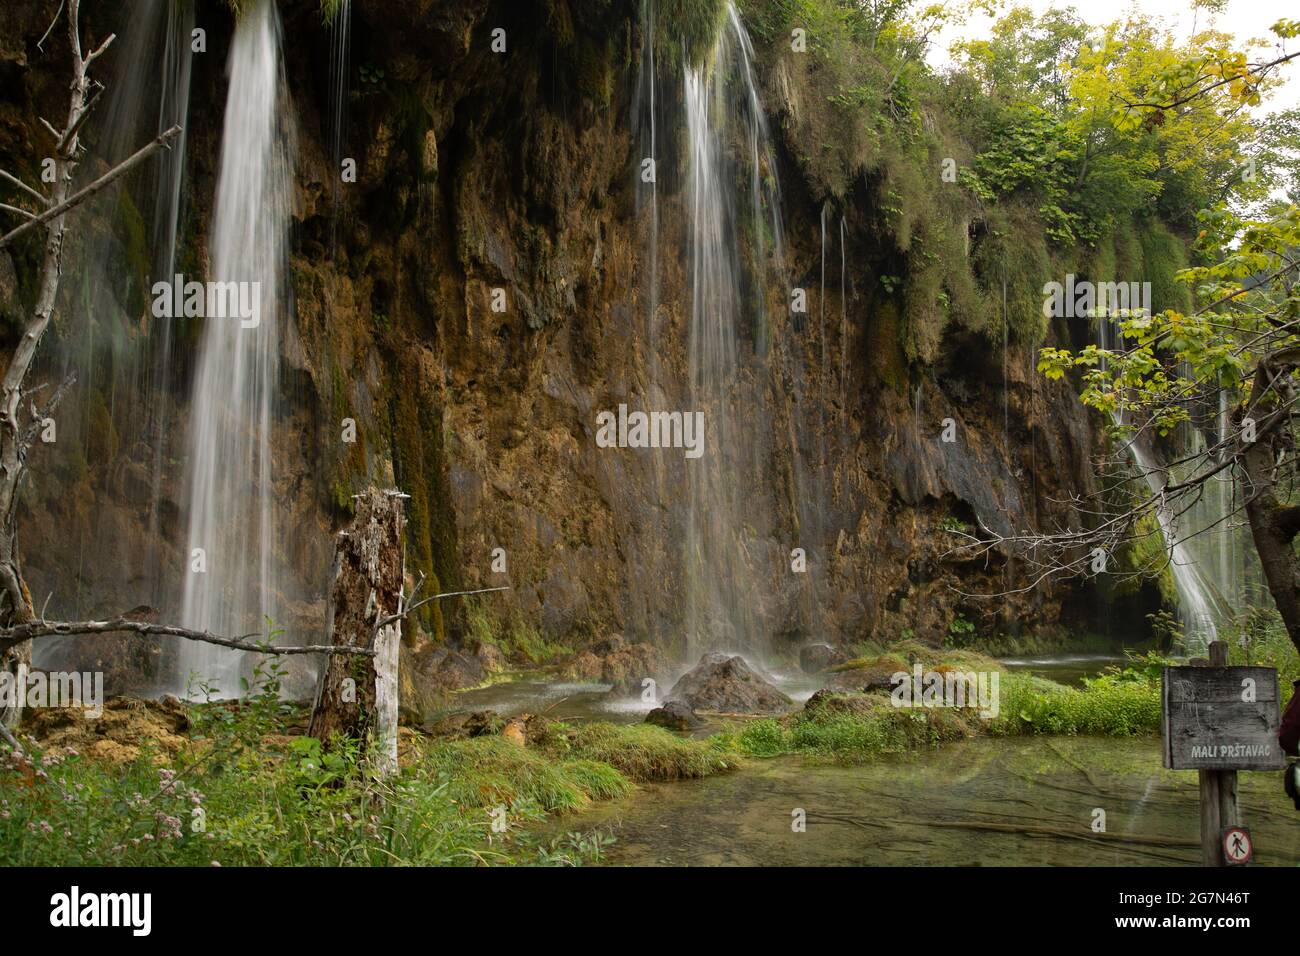 Parque natural de Plivitche en Croacia, caídas de agua, grandes lagos, bosques mediterráneos y lugares de ensueño Stock Photo